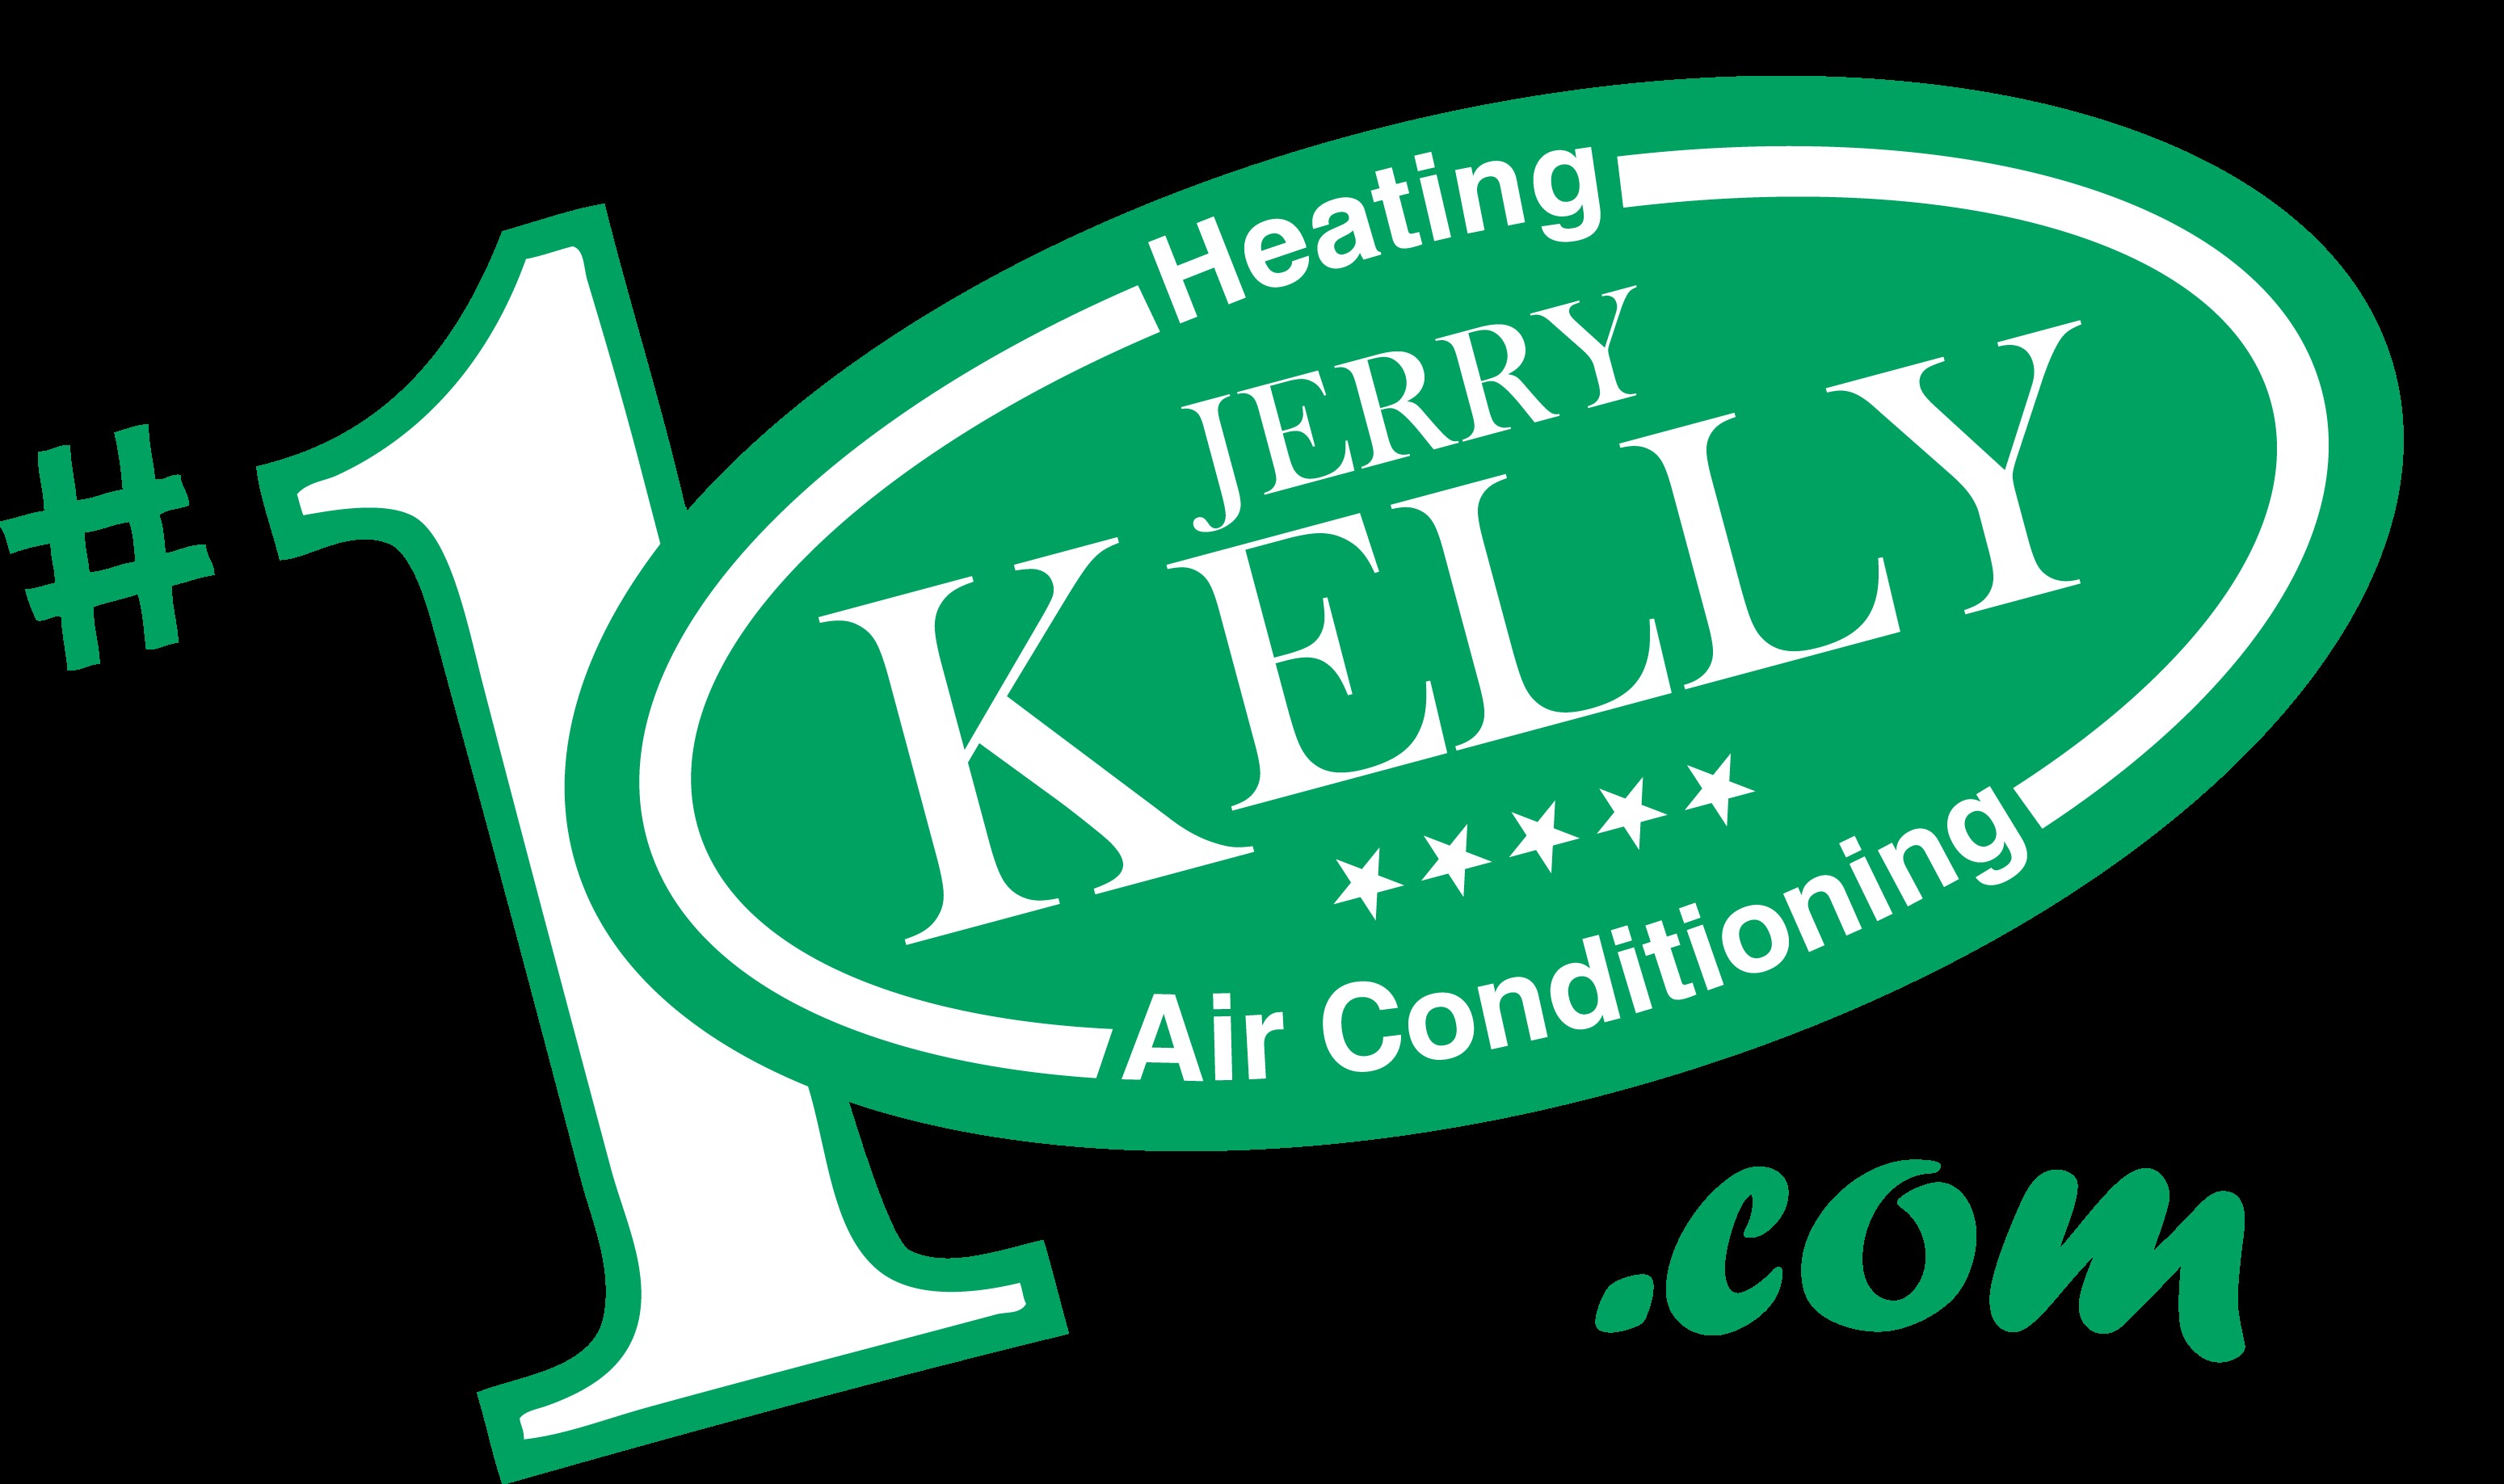 Jerry Kelly (Presentación)